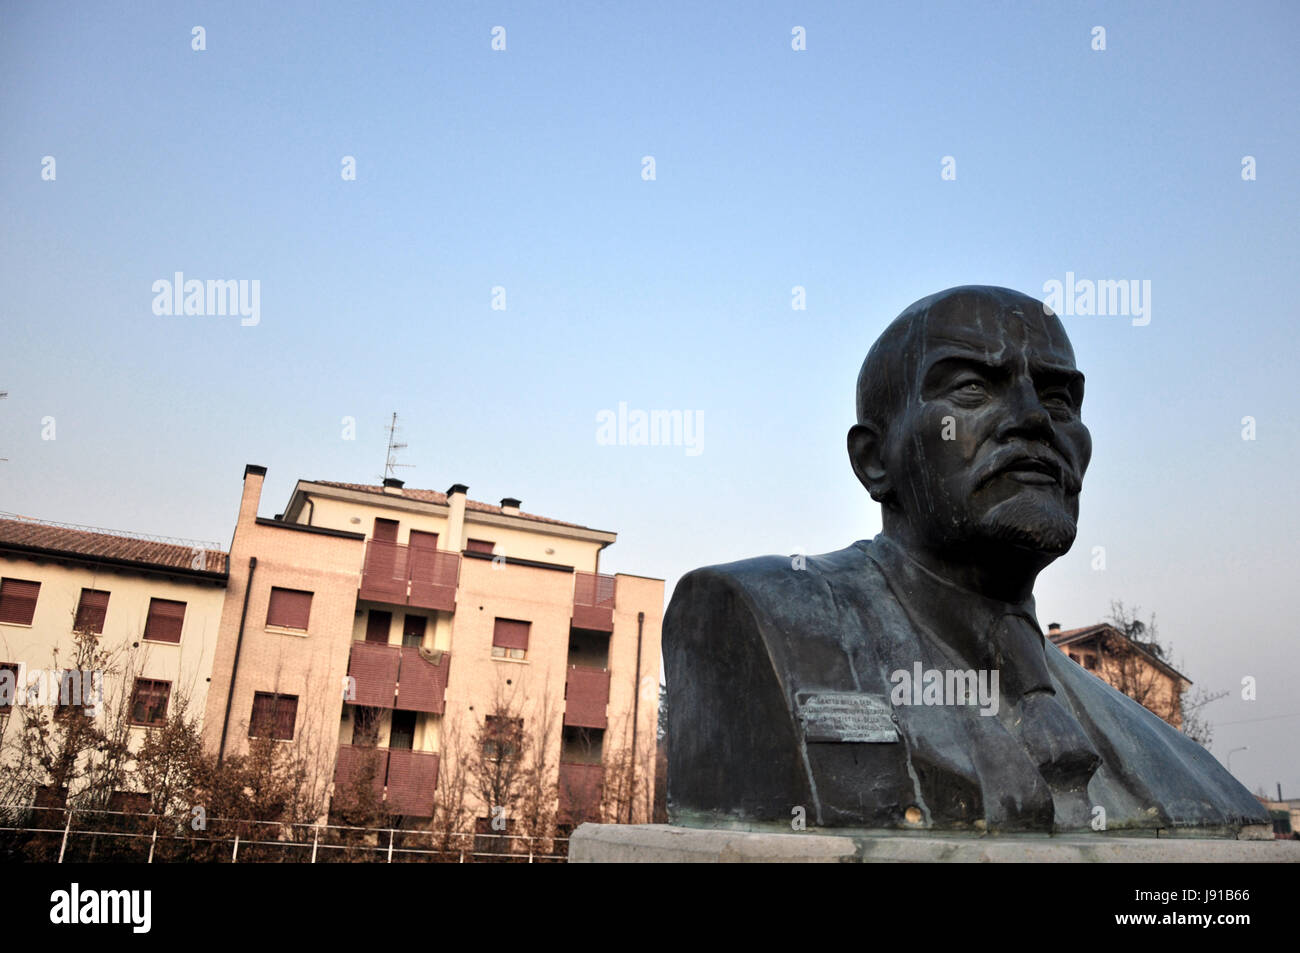 monument, nostalgia, communist, buildings, monument, statue, nostalgia, Stock Photo